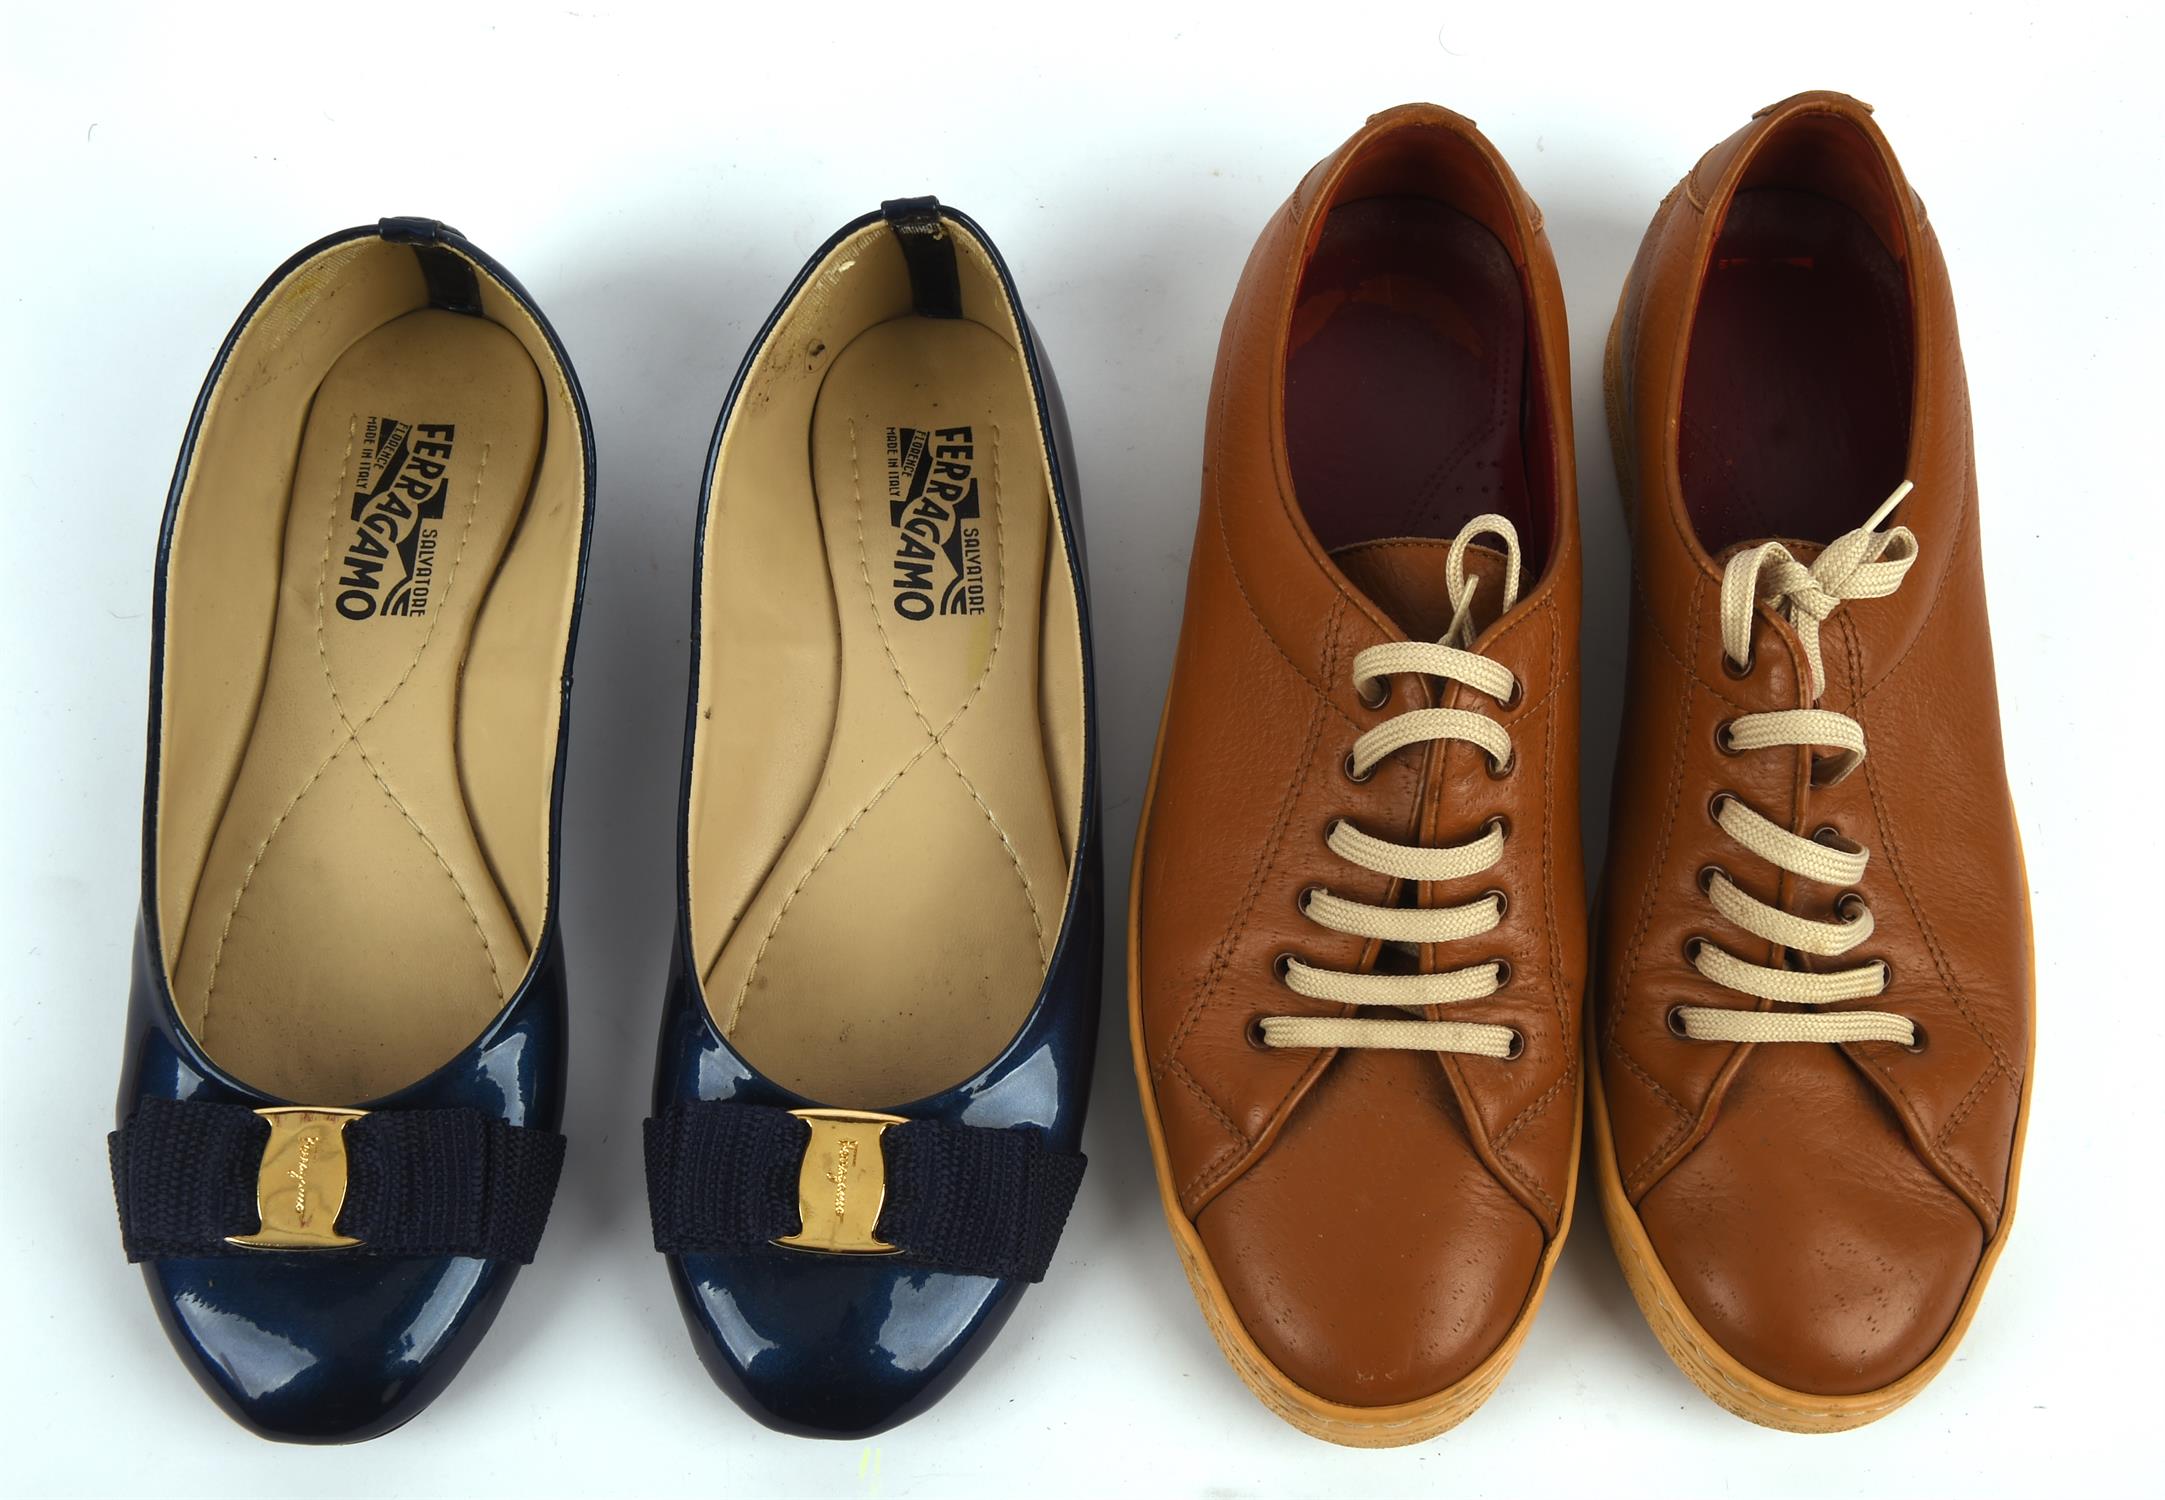 SALVATORRE FERRAGAMO four pairs of ladies 1990s vintage shoes - black patent court shoes, - Image 3 of 4